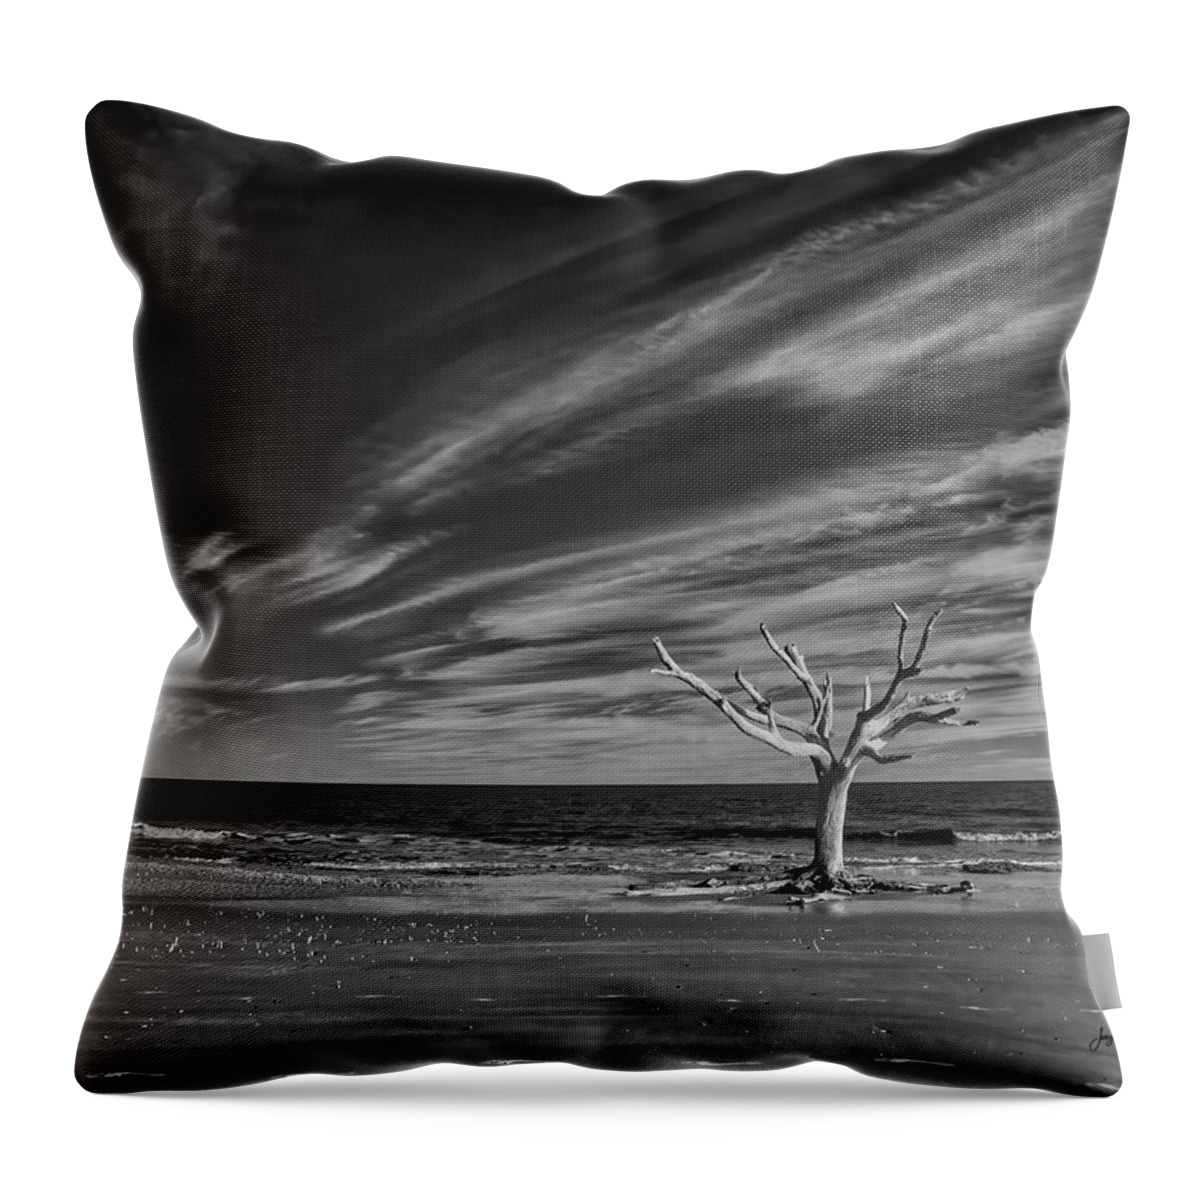 Boneyard Beach Throw Pillow featuring the photograph The Enduring Tree by Jurgen Lorenzen